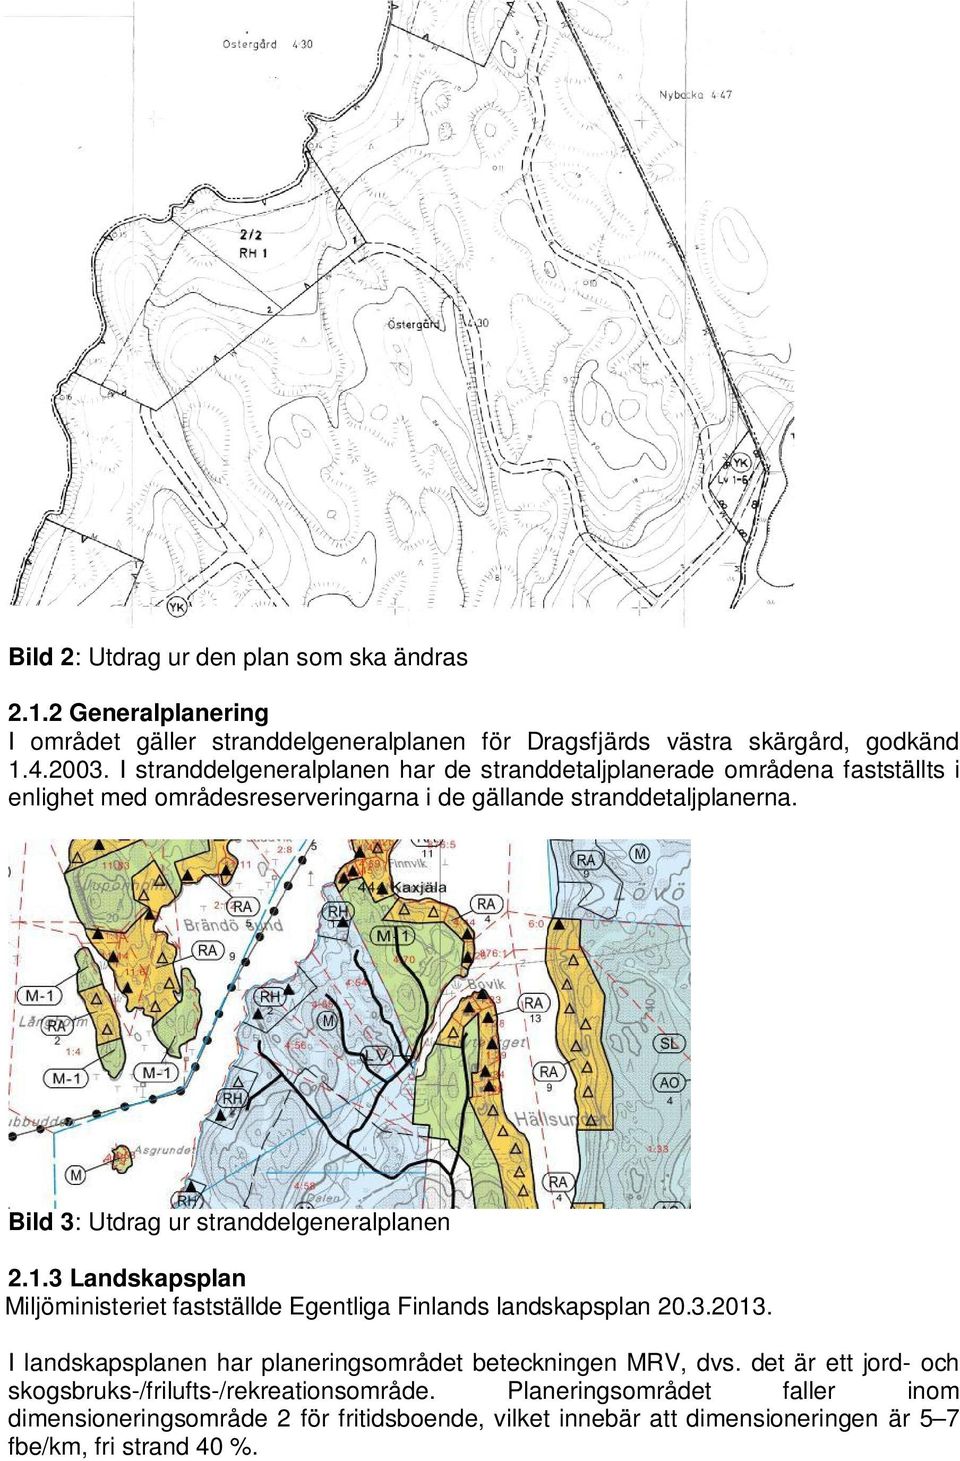 Bild 3: Utdrag ur stranddelgeneralplanen 2.1.3 Landskapsplan Miljöministeriet fastställde Egentliga Finlands landskapsplan 20.3.2013.